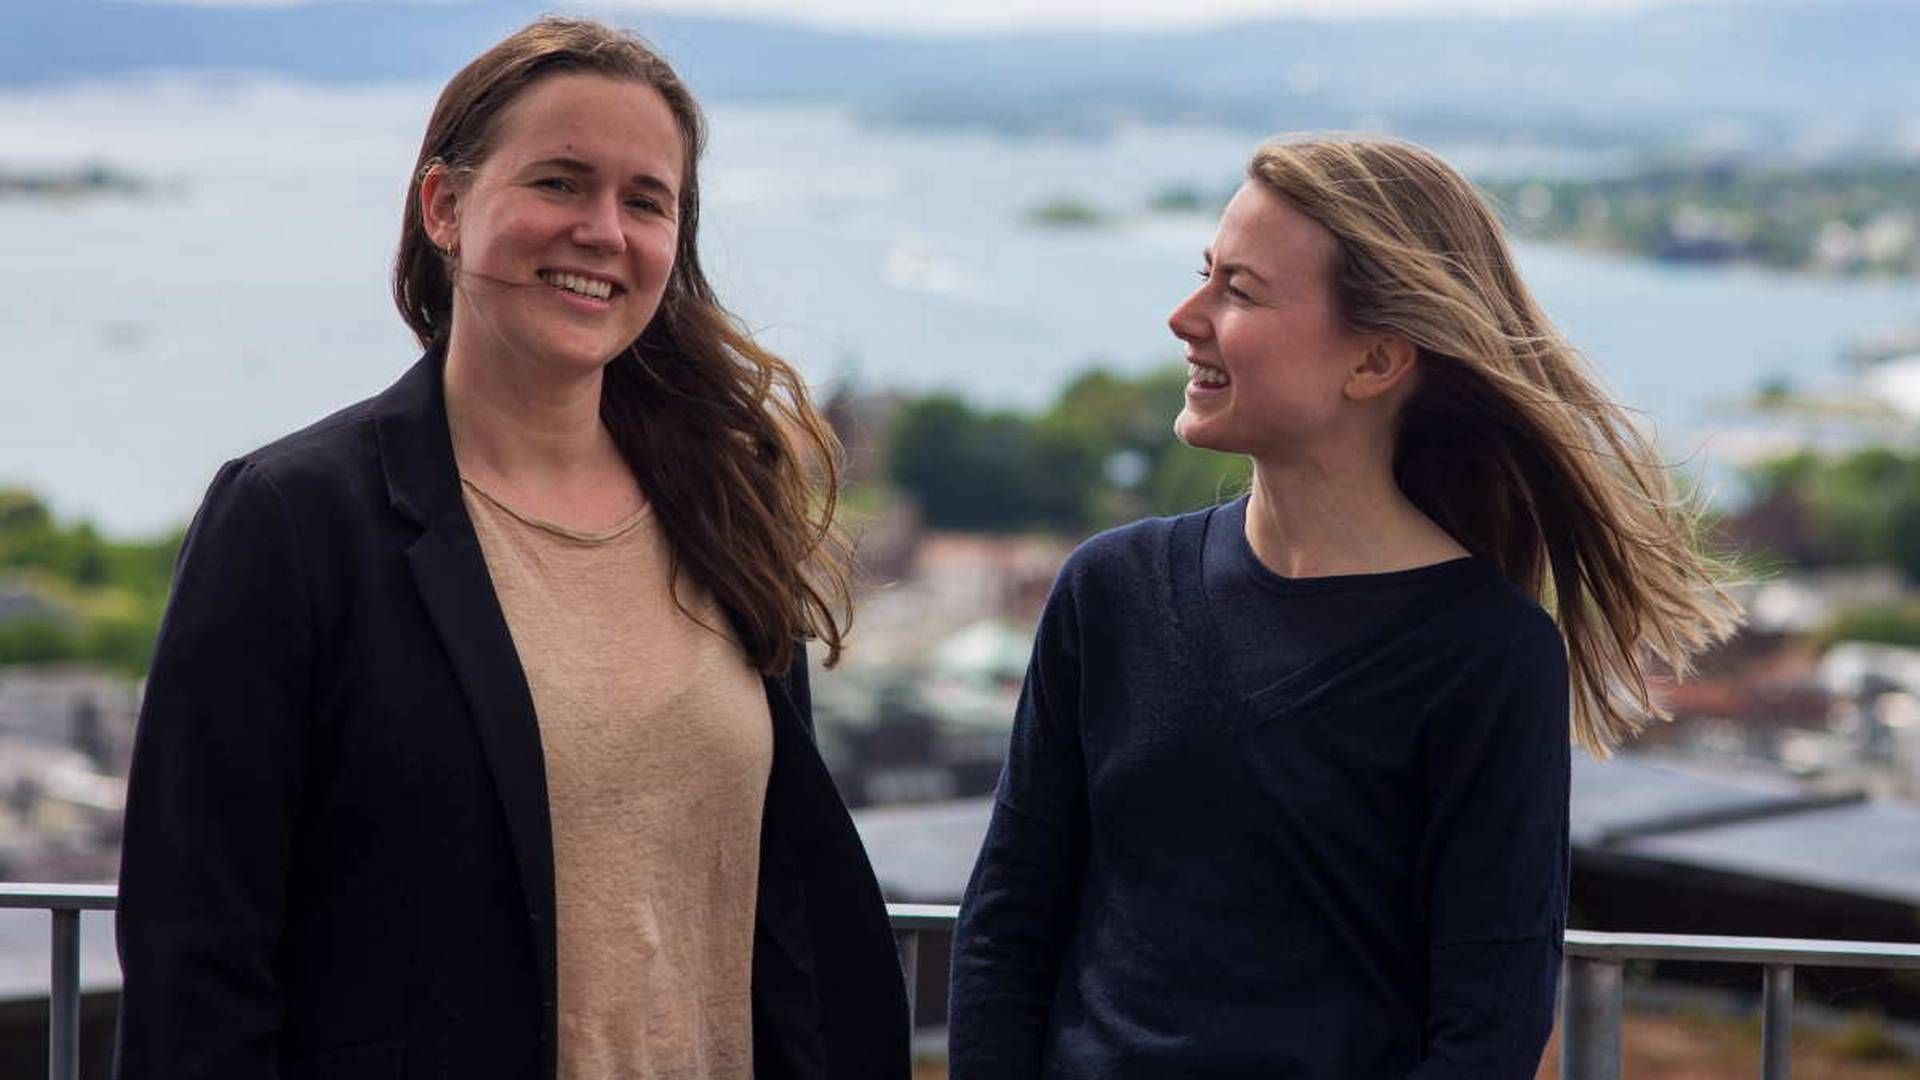 BYTTER JOBB: Karoline Veum Solberg (t.v.) og Emilie Marley er nye miljørådgivere i Entra | Foto: Entra